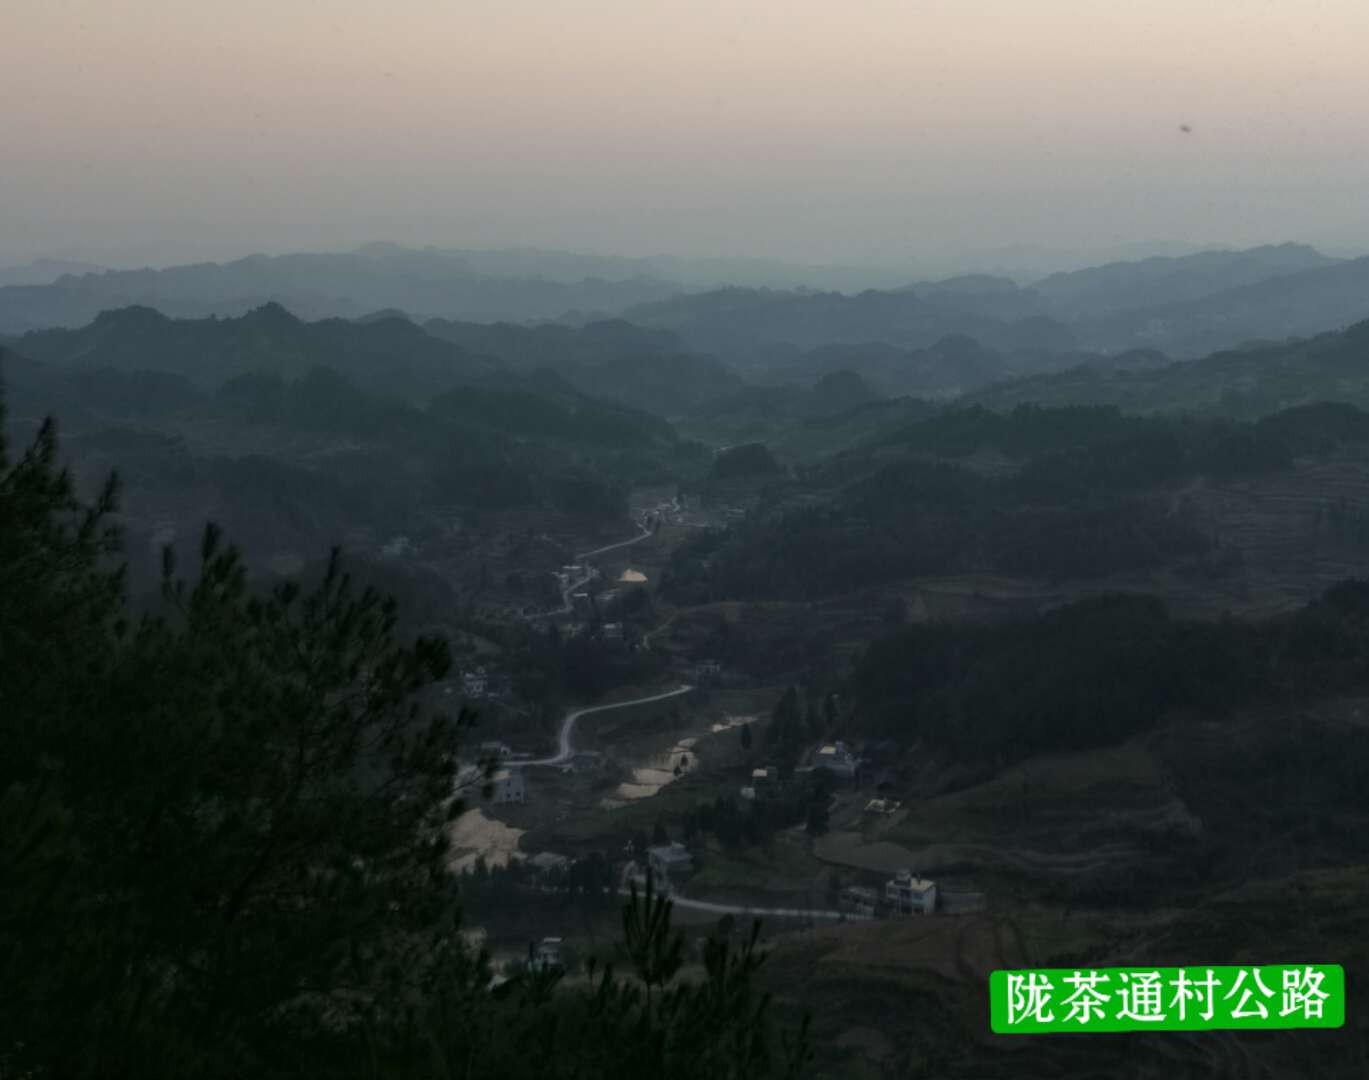 隴茶通村公路